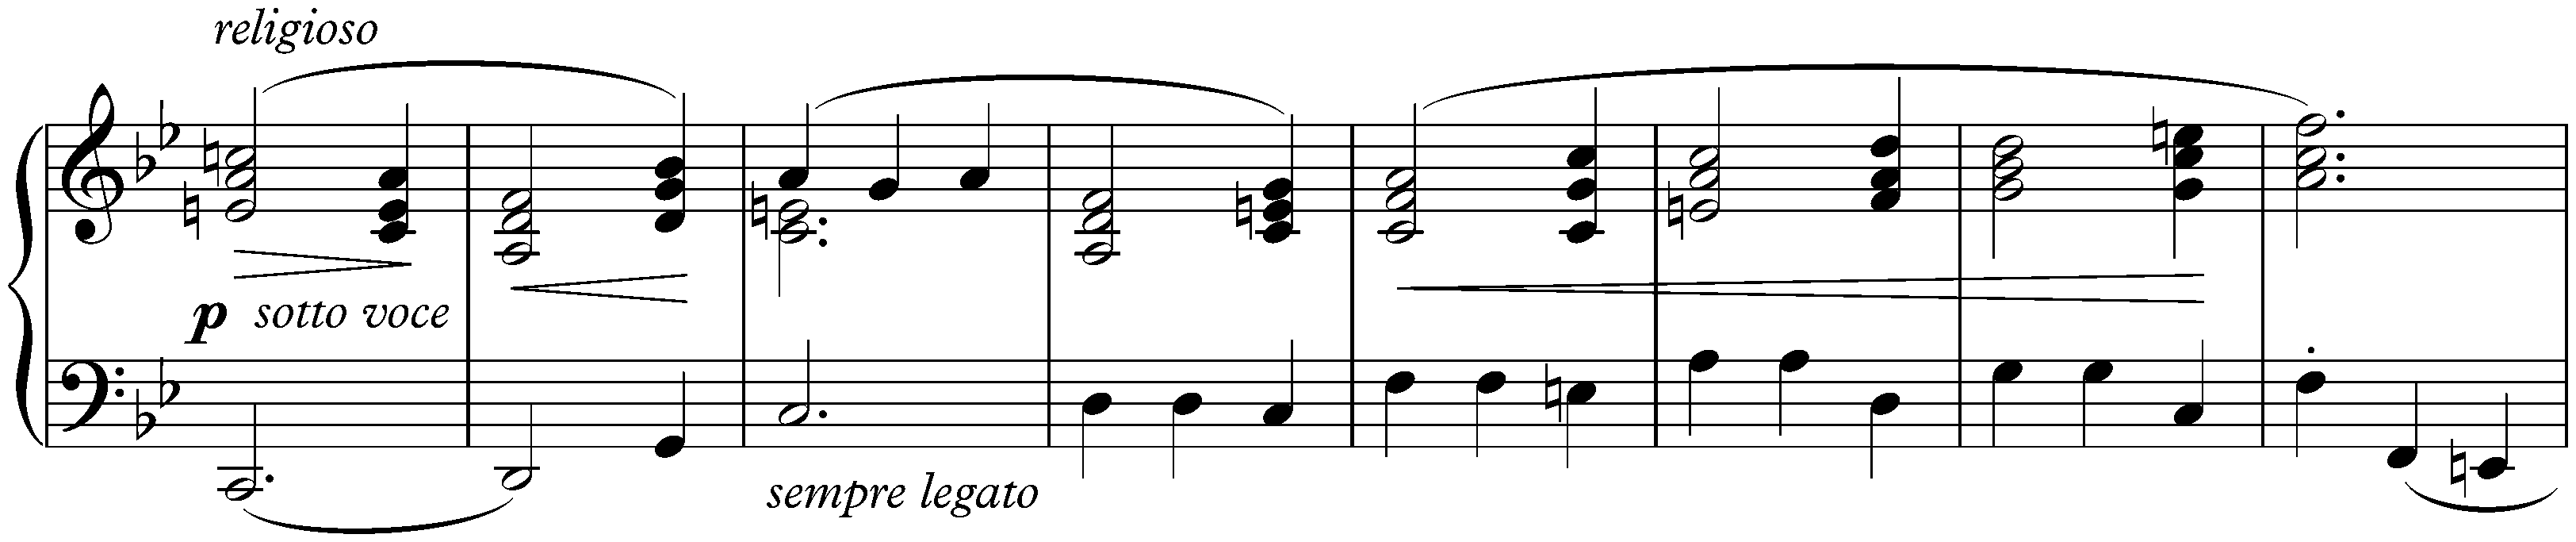 Three Nocturnes, op. 15; 3. G minor